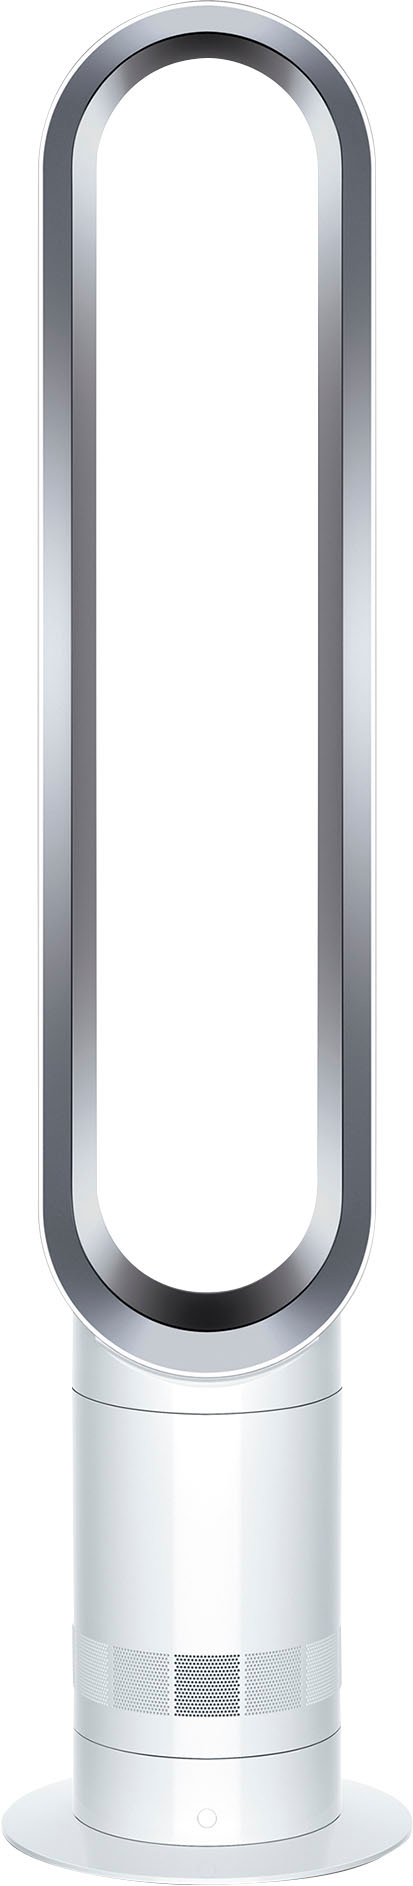 Dyson Cool Tower Fan AM07 White/Silver 464818-01 - Best Buy